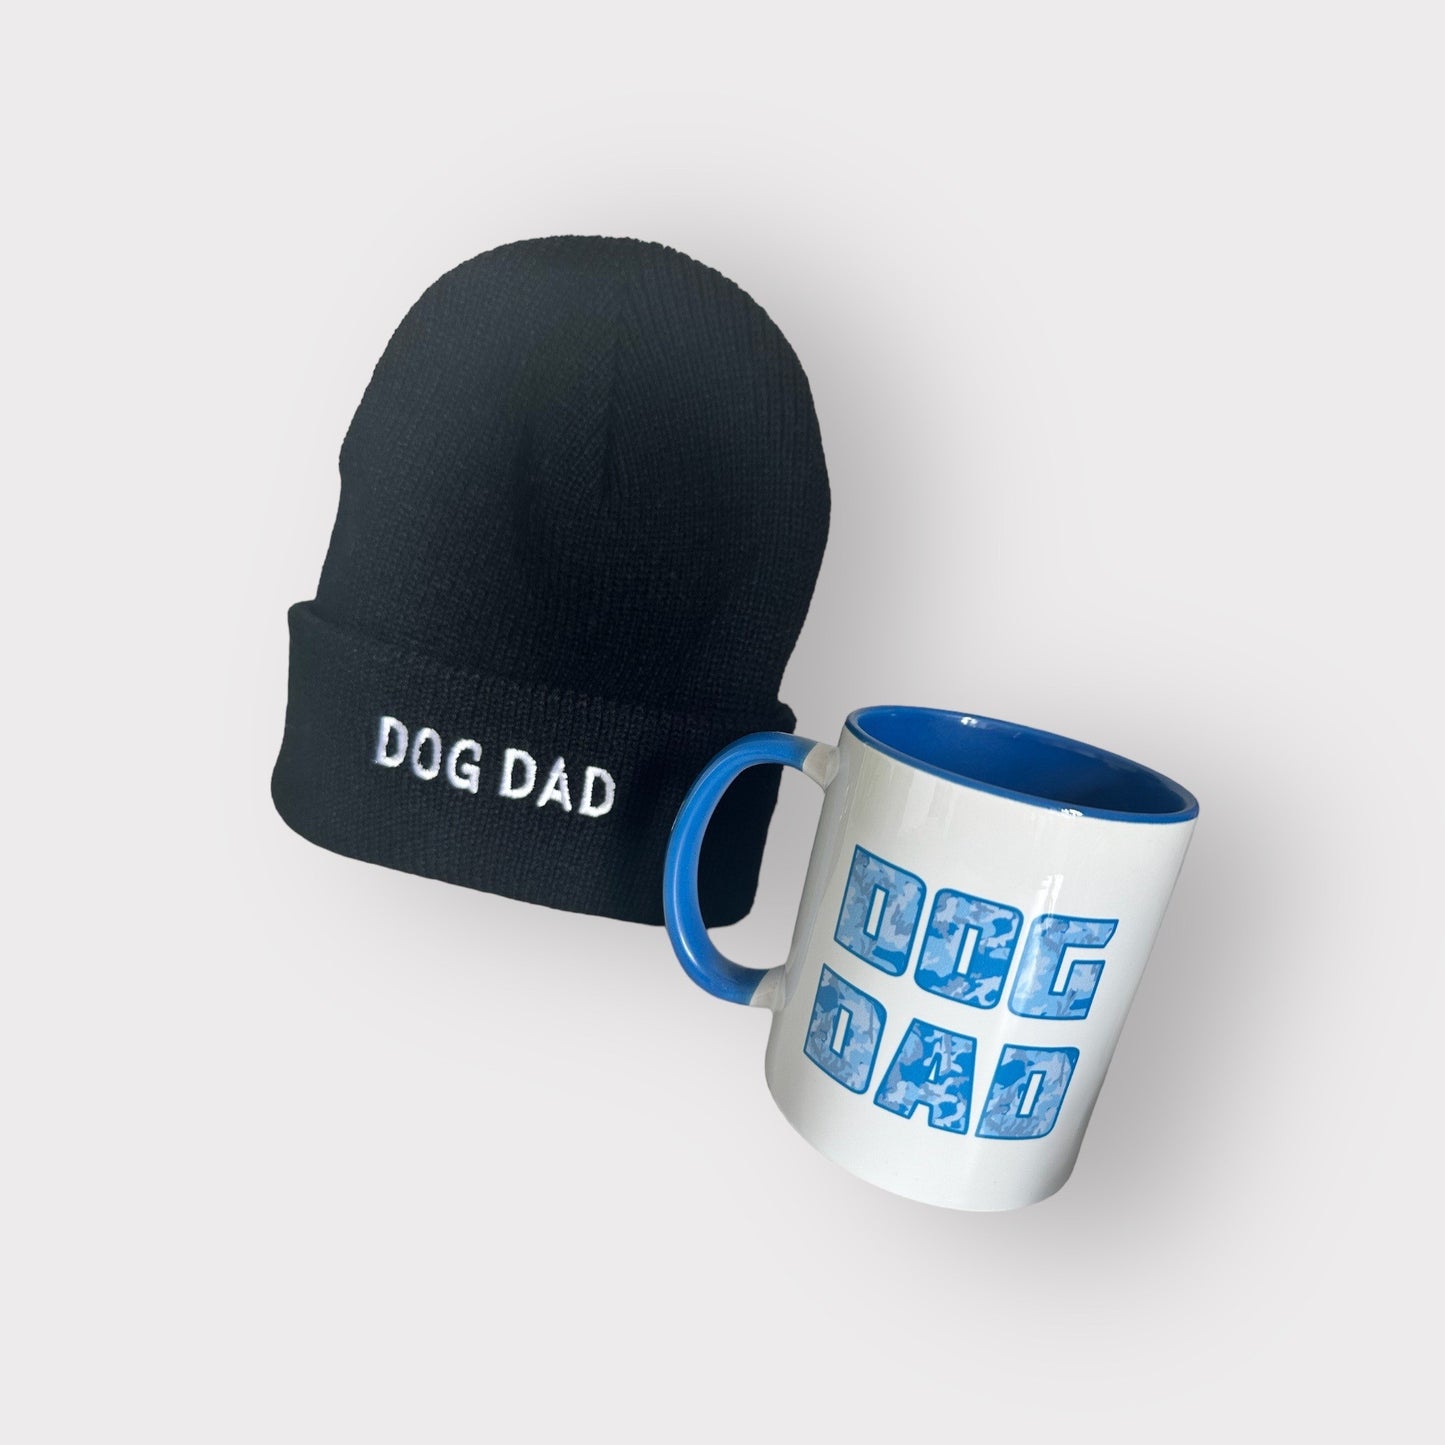 Dog Dad - Embroidered Black Beanie Hat